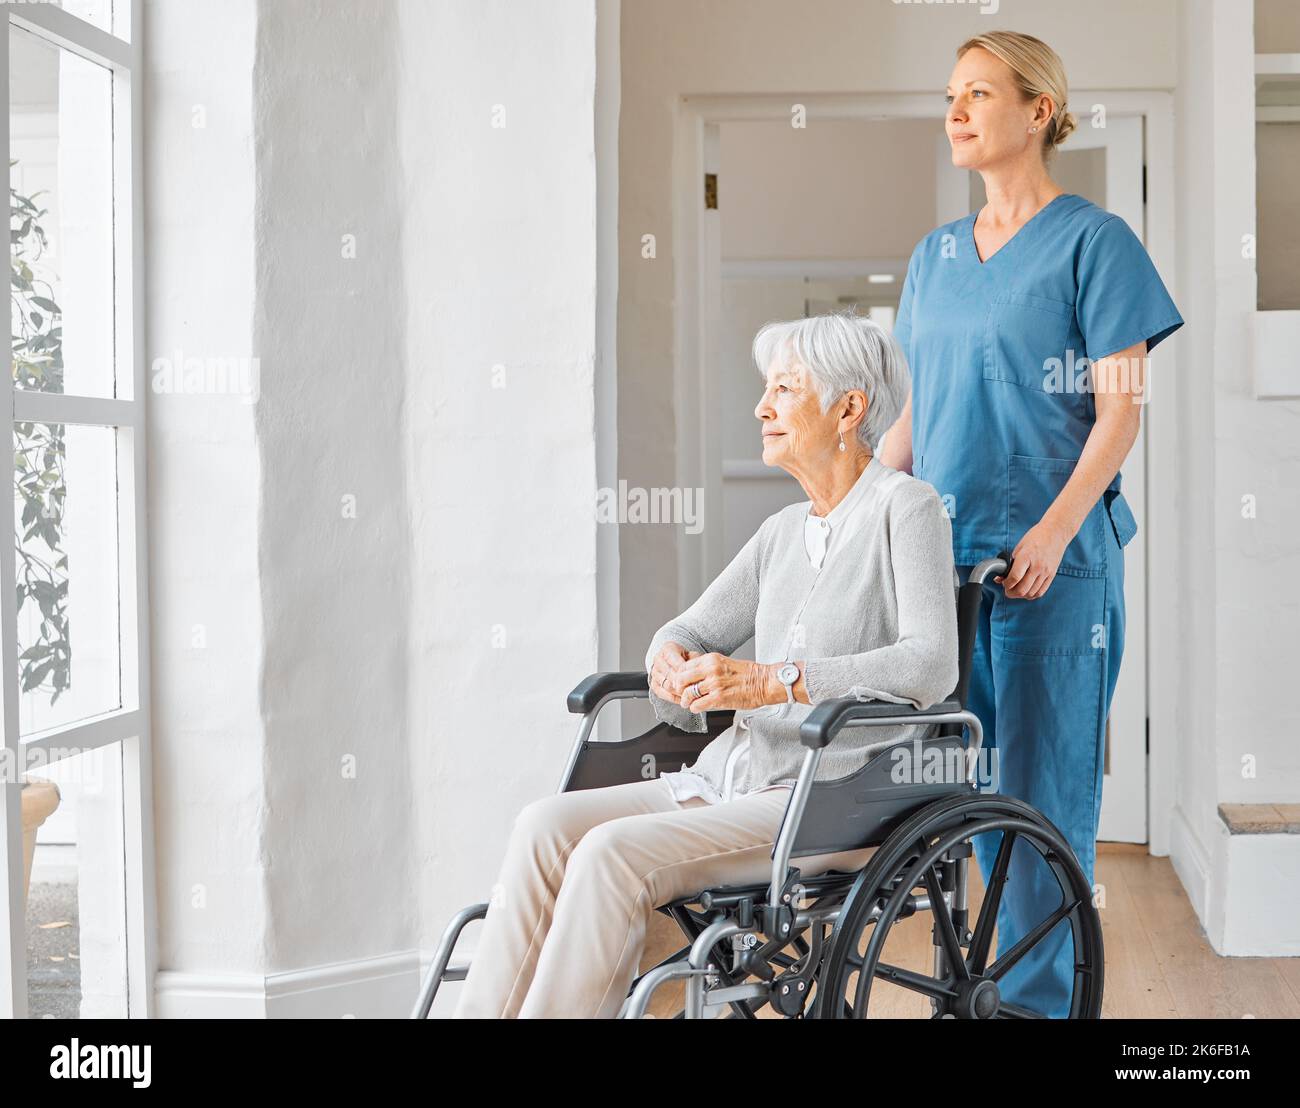 Le cose cambieranno per il meglio, lo so appena. un'infermiera che si occupa di una donna anziana su una sedia a rotelle in una casa di riposo. Foto Stock